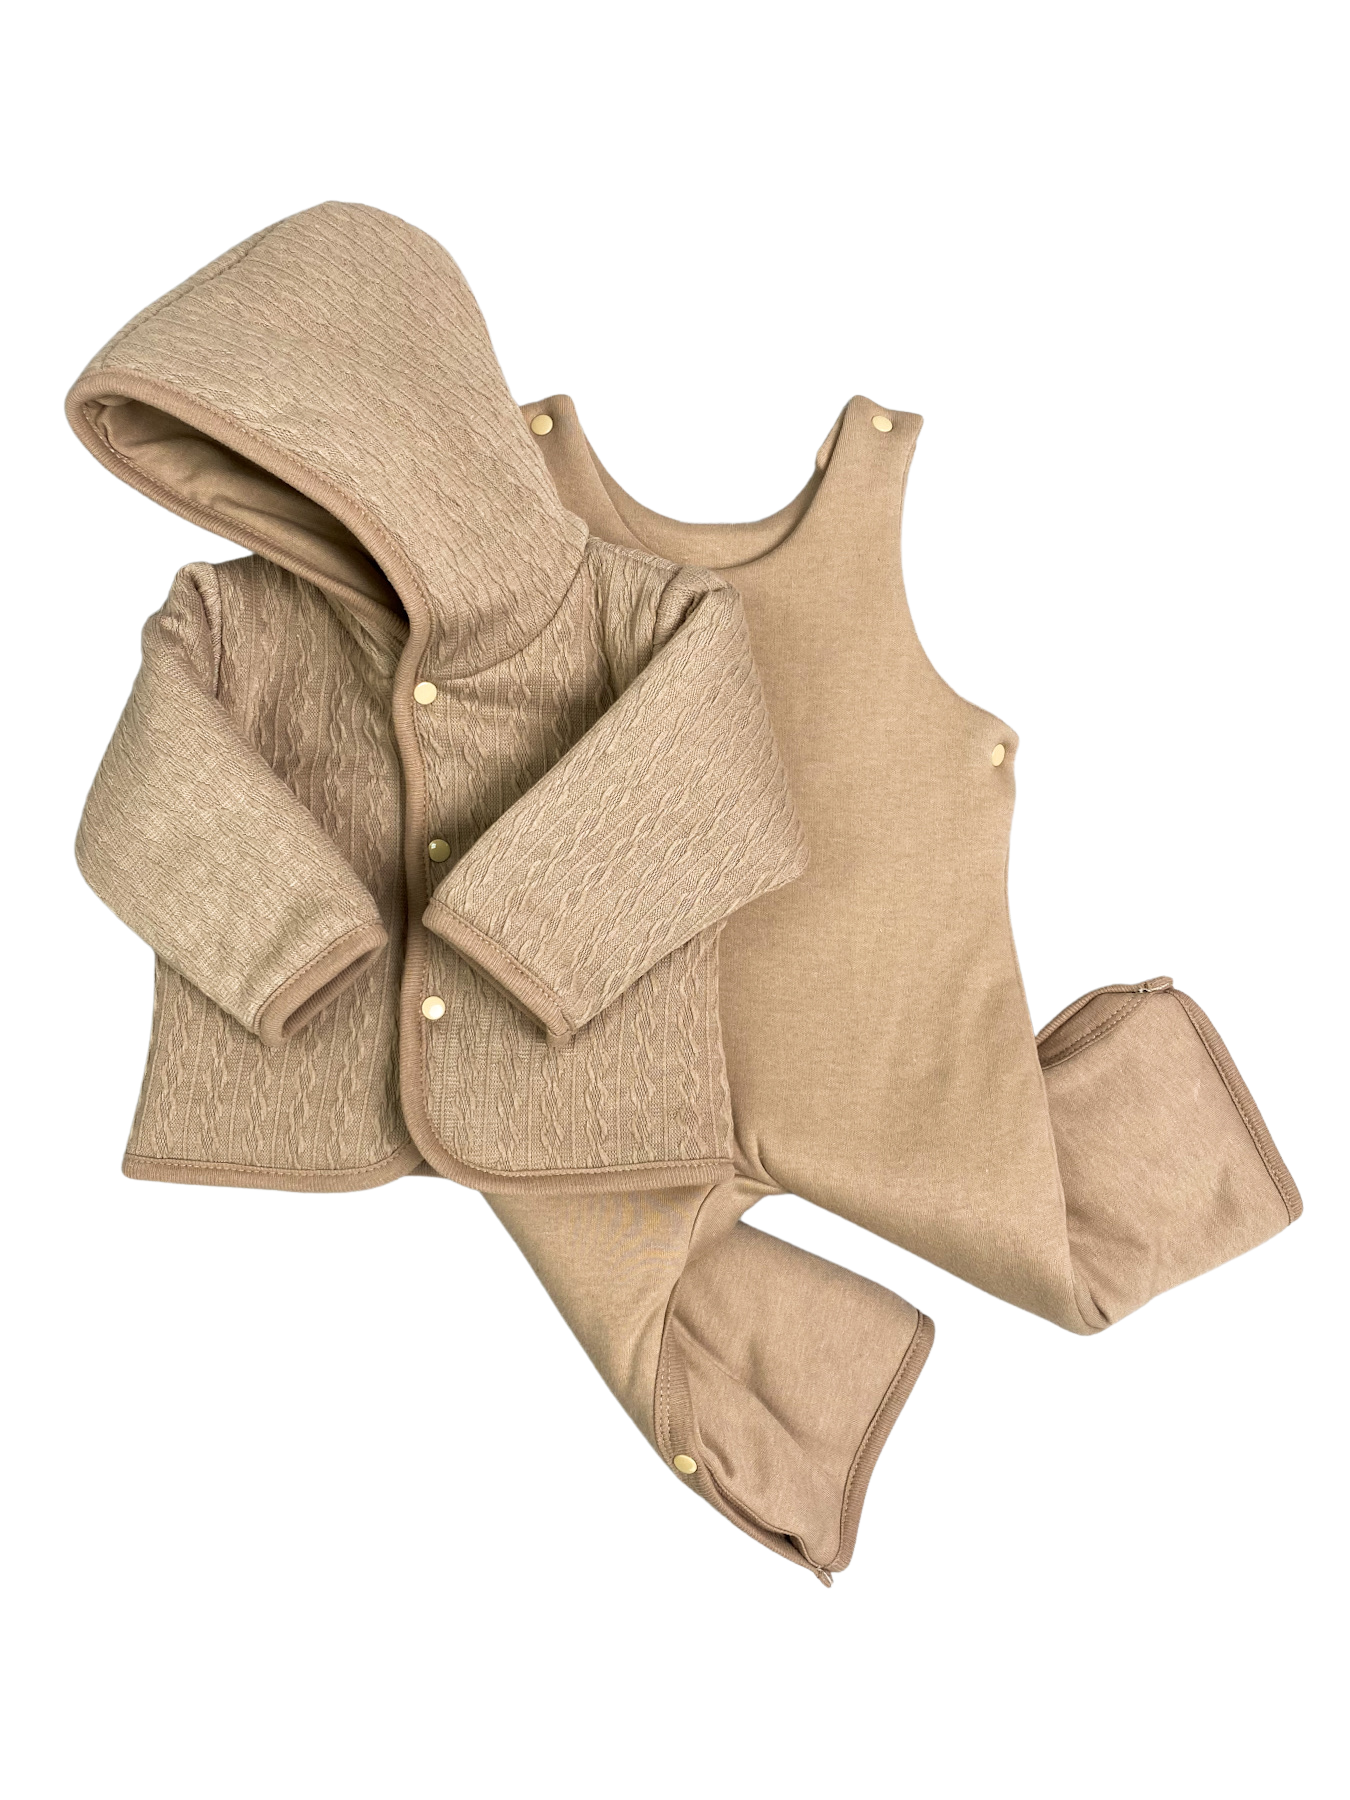 Комплект верхней одежды Clariss Вязаный микс, коричневый; светло-коричневый; бежевый, 62